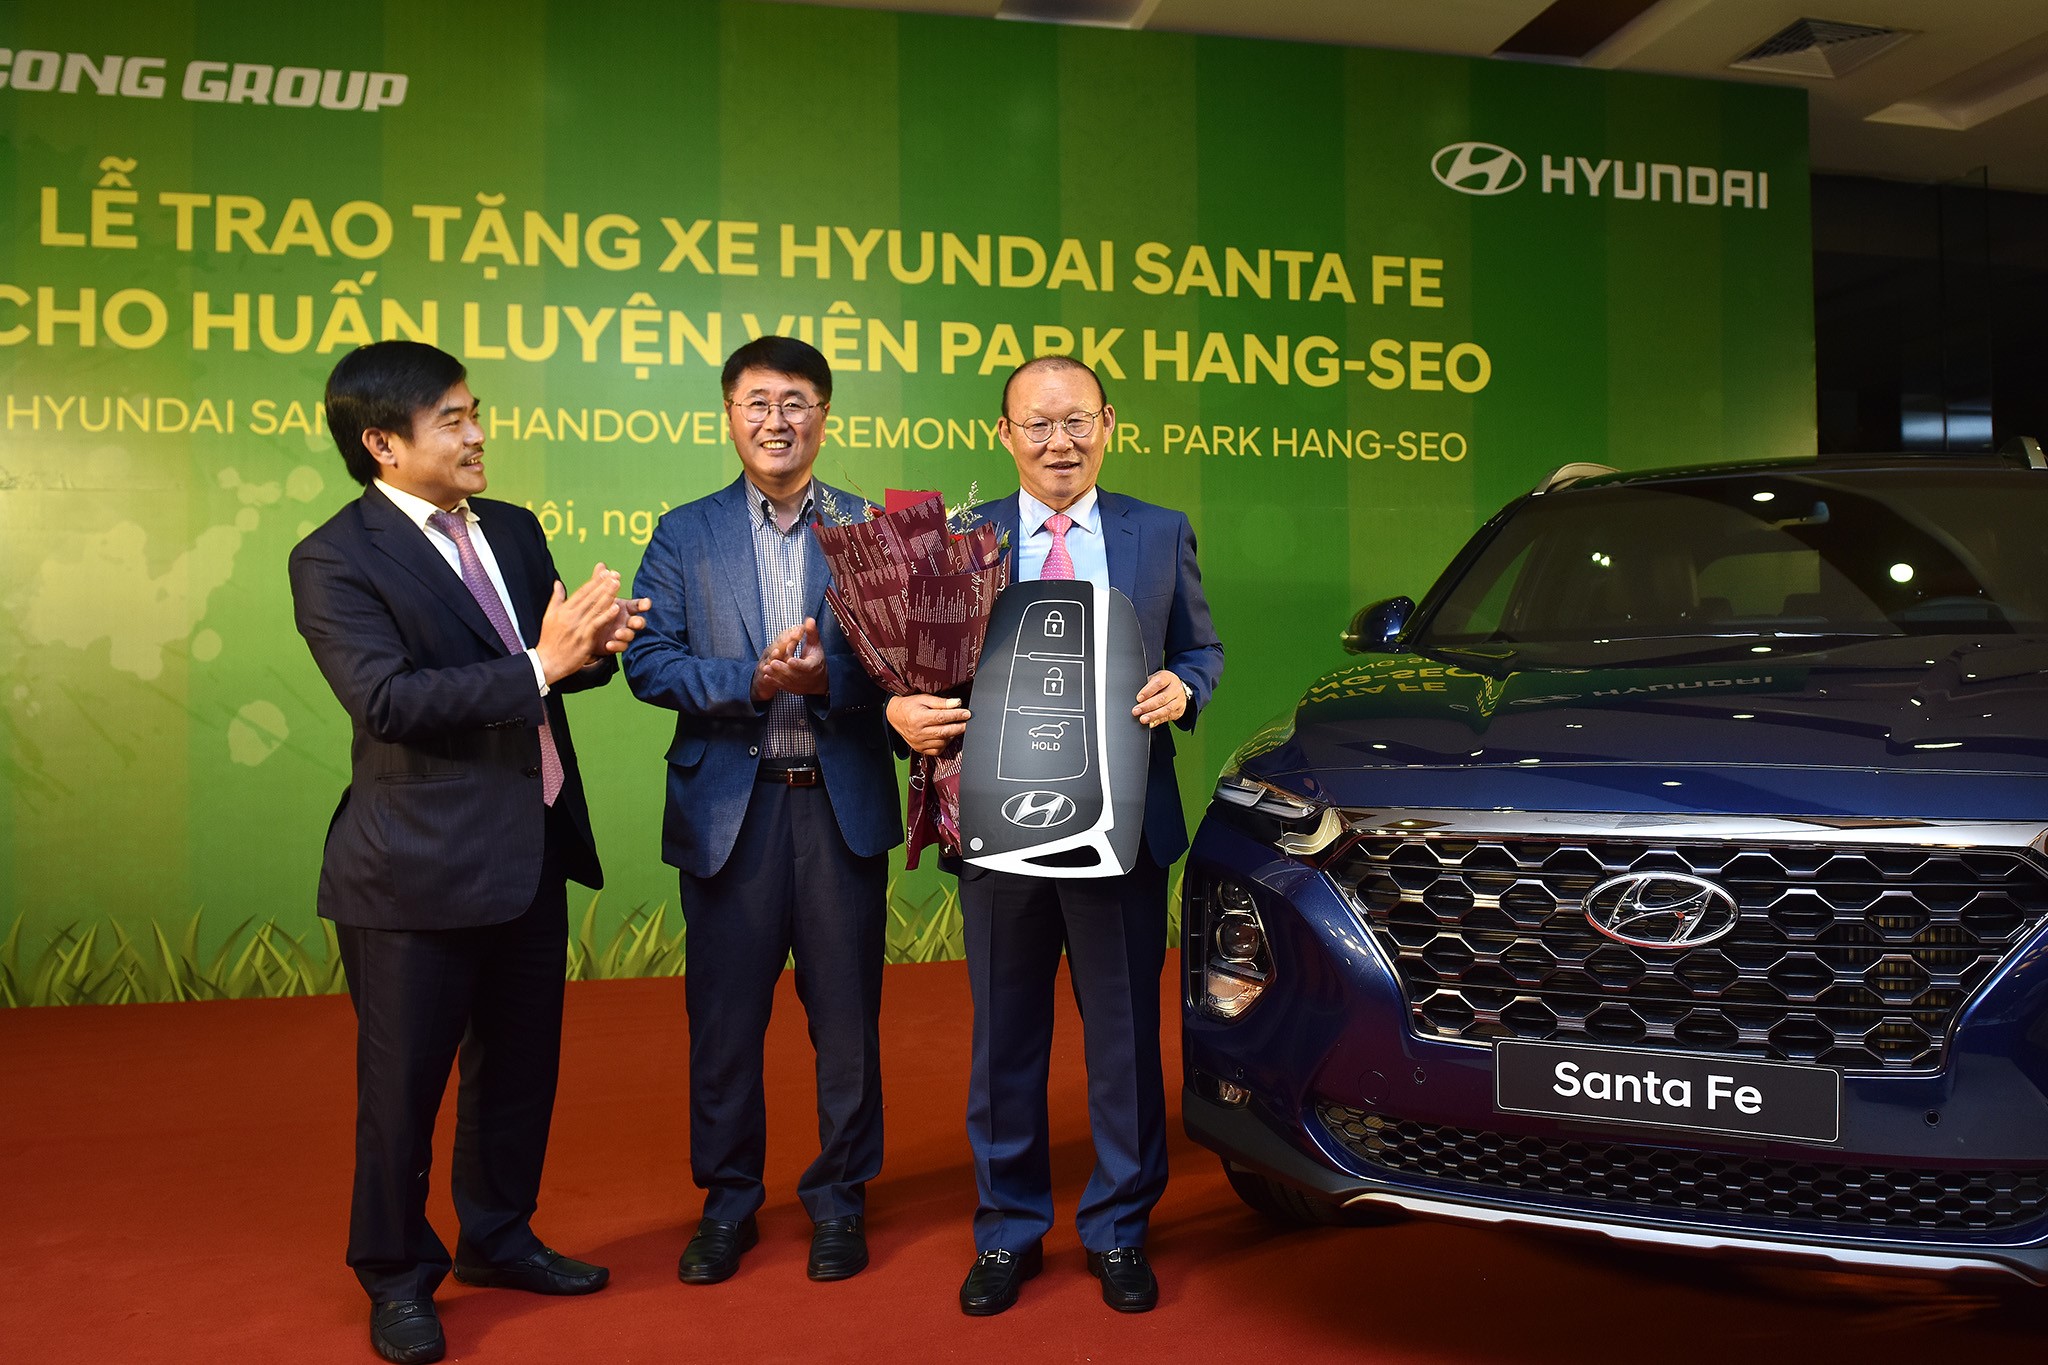 Ông Park Hang Seo được tặng Hyundai Santa Fe, Ông Park Hang Seo được tặng ô tô, Ông Park Hang Seo,